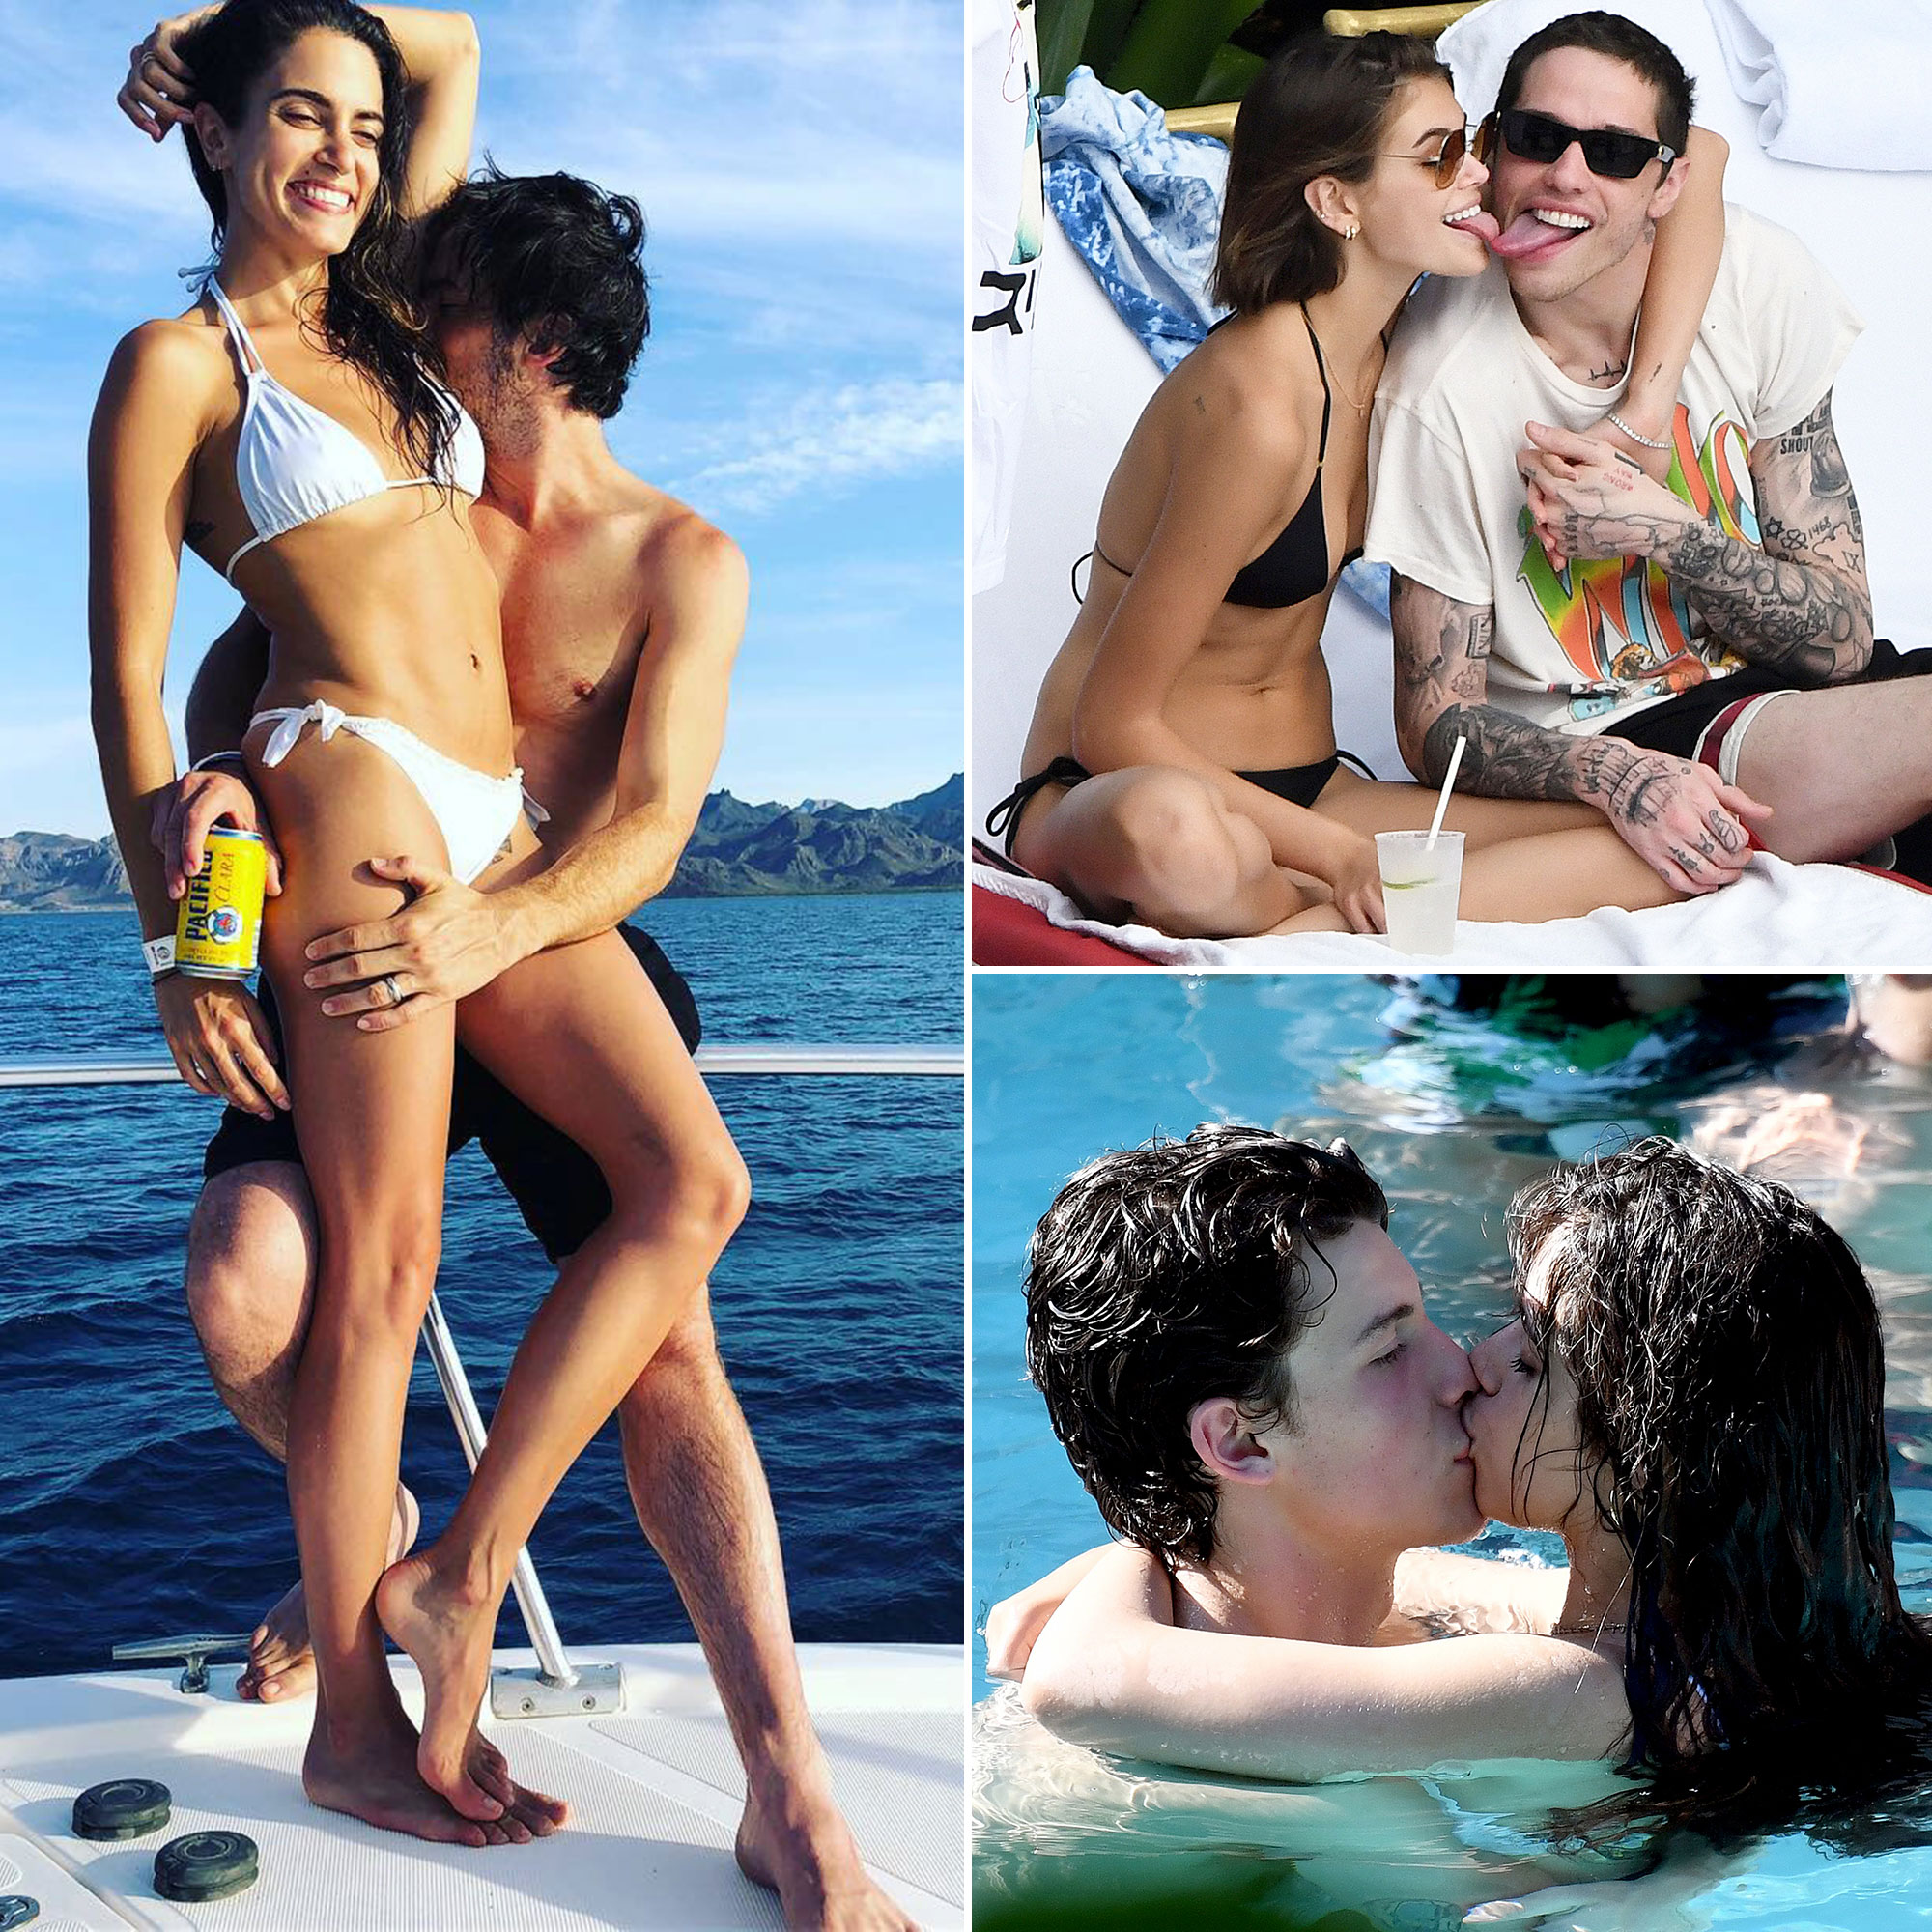 couples voyeur beach videos Xxx Pics Hd